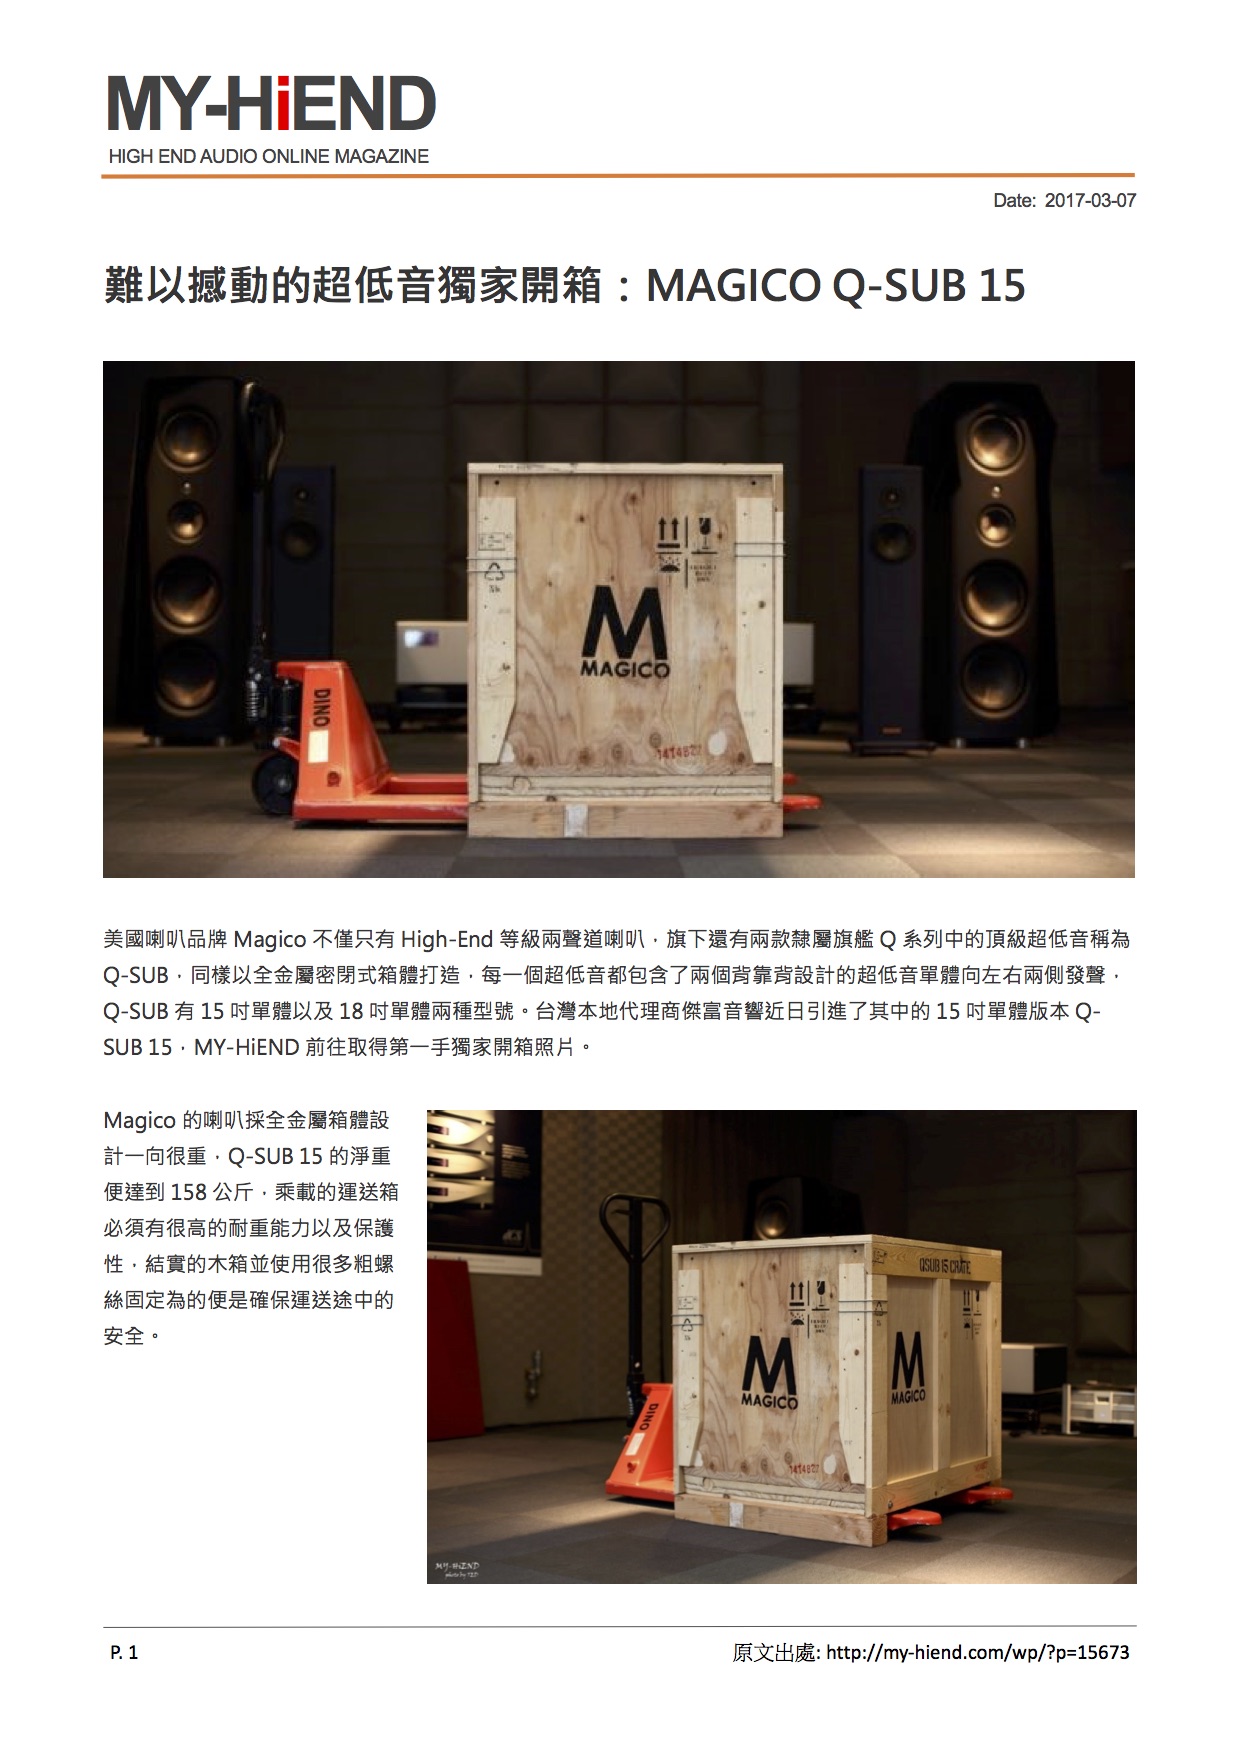 佳盈 Magico Q-SUB 15 超低音喇叭